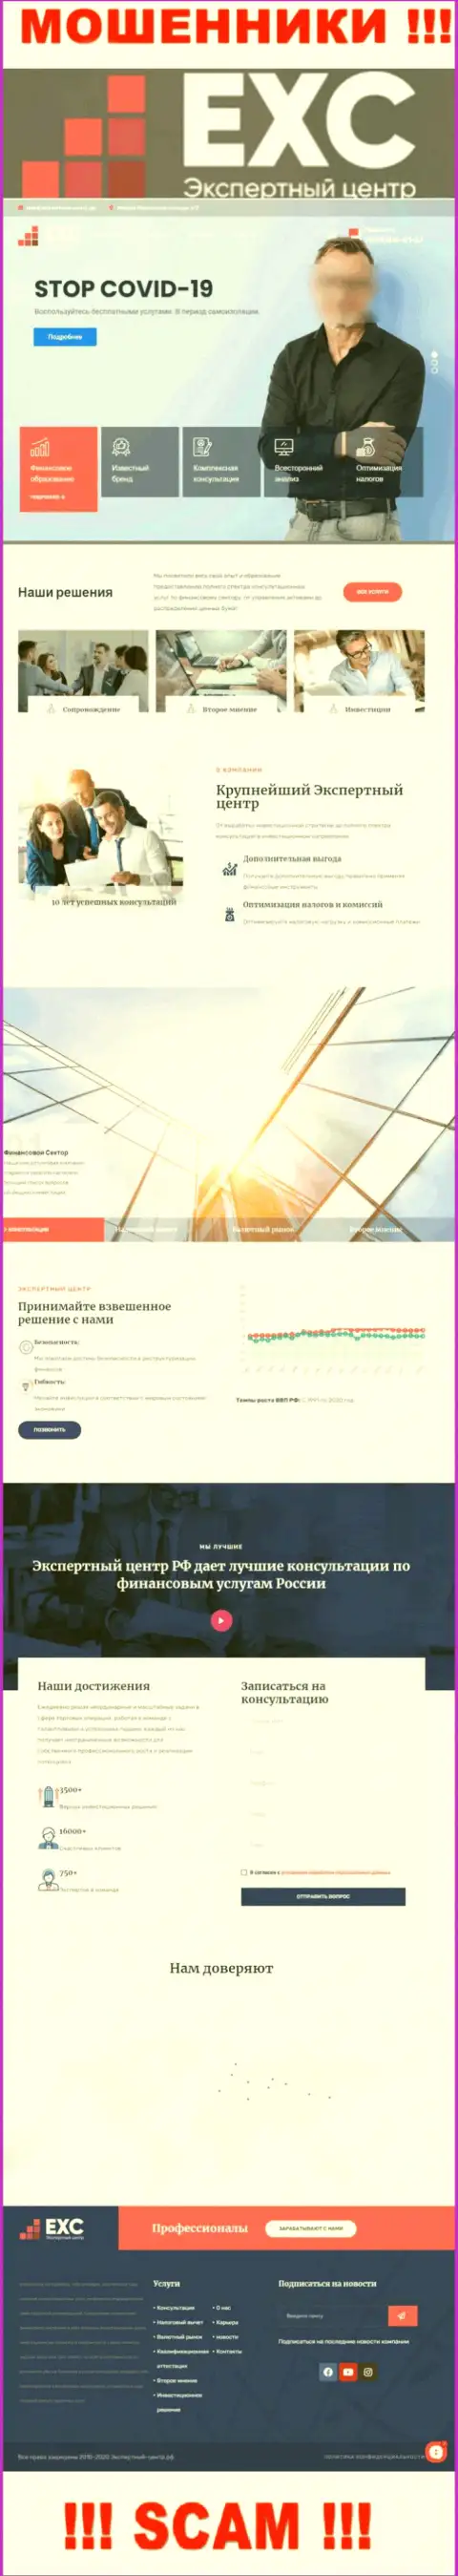 Официальный веб-сервис мошенников Экспертный Центр РФ